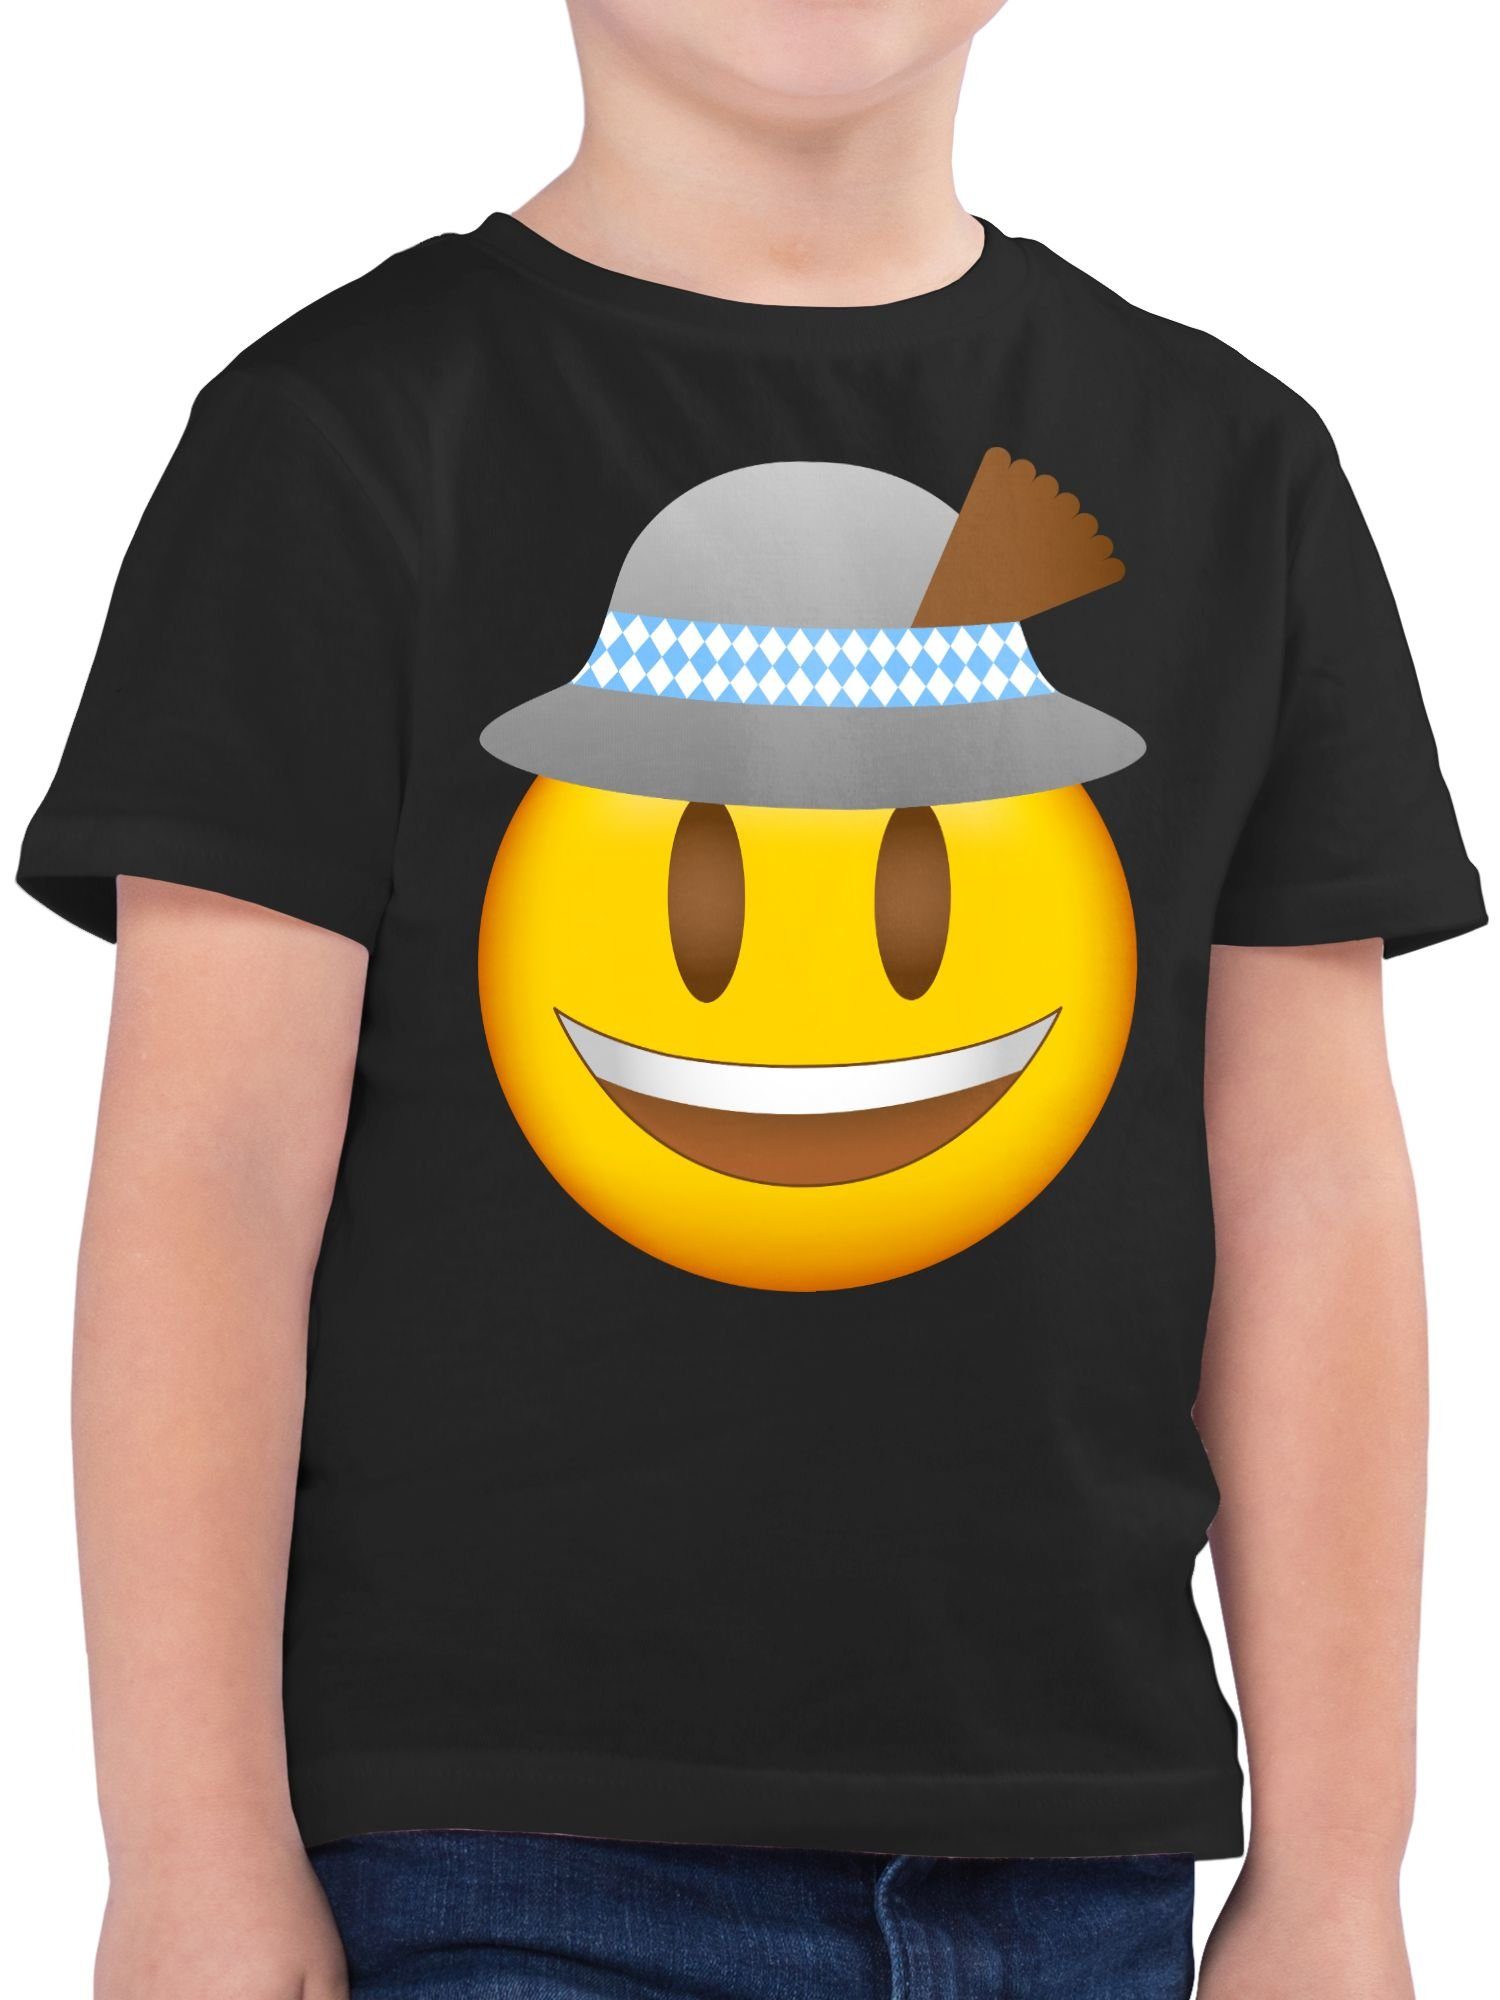 Shirtracer T-Shirt Oktoberfest Emoticon mit Hut Mode für Oktoberfest Kinder Outfit 1 Schwarz